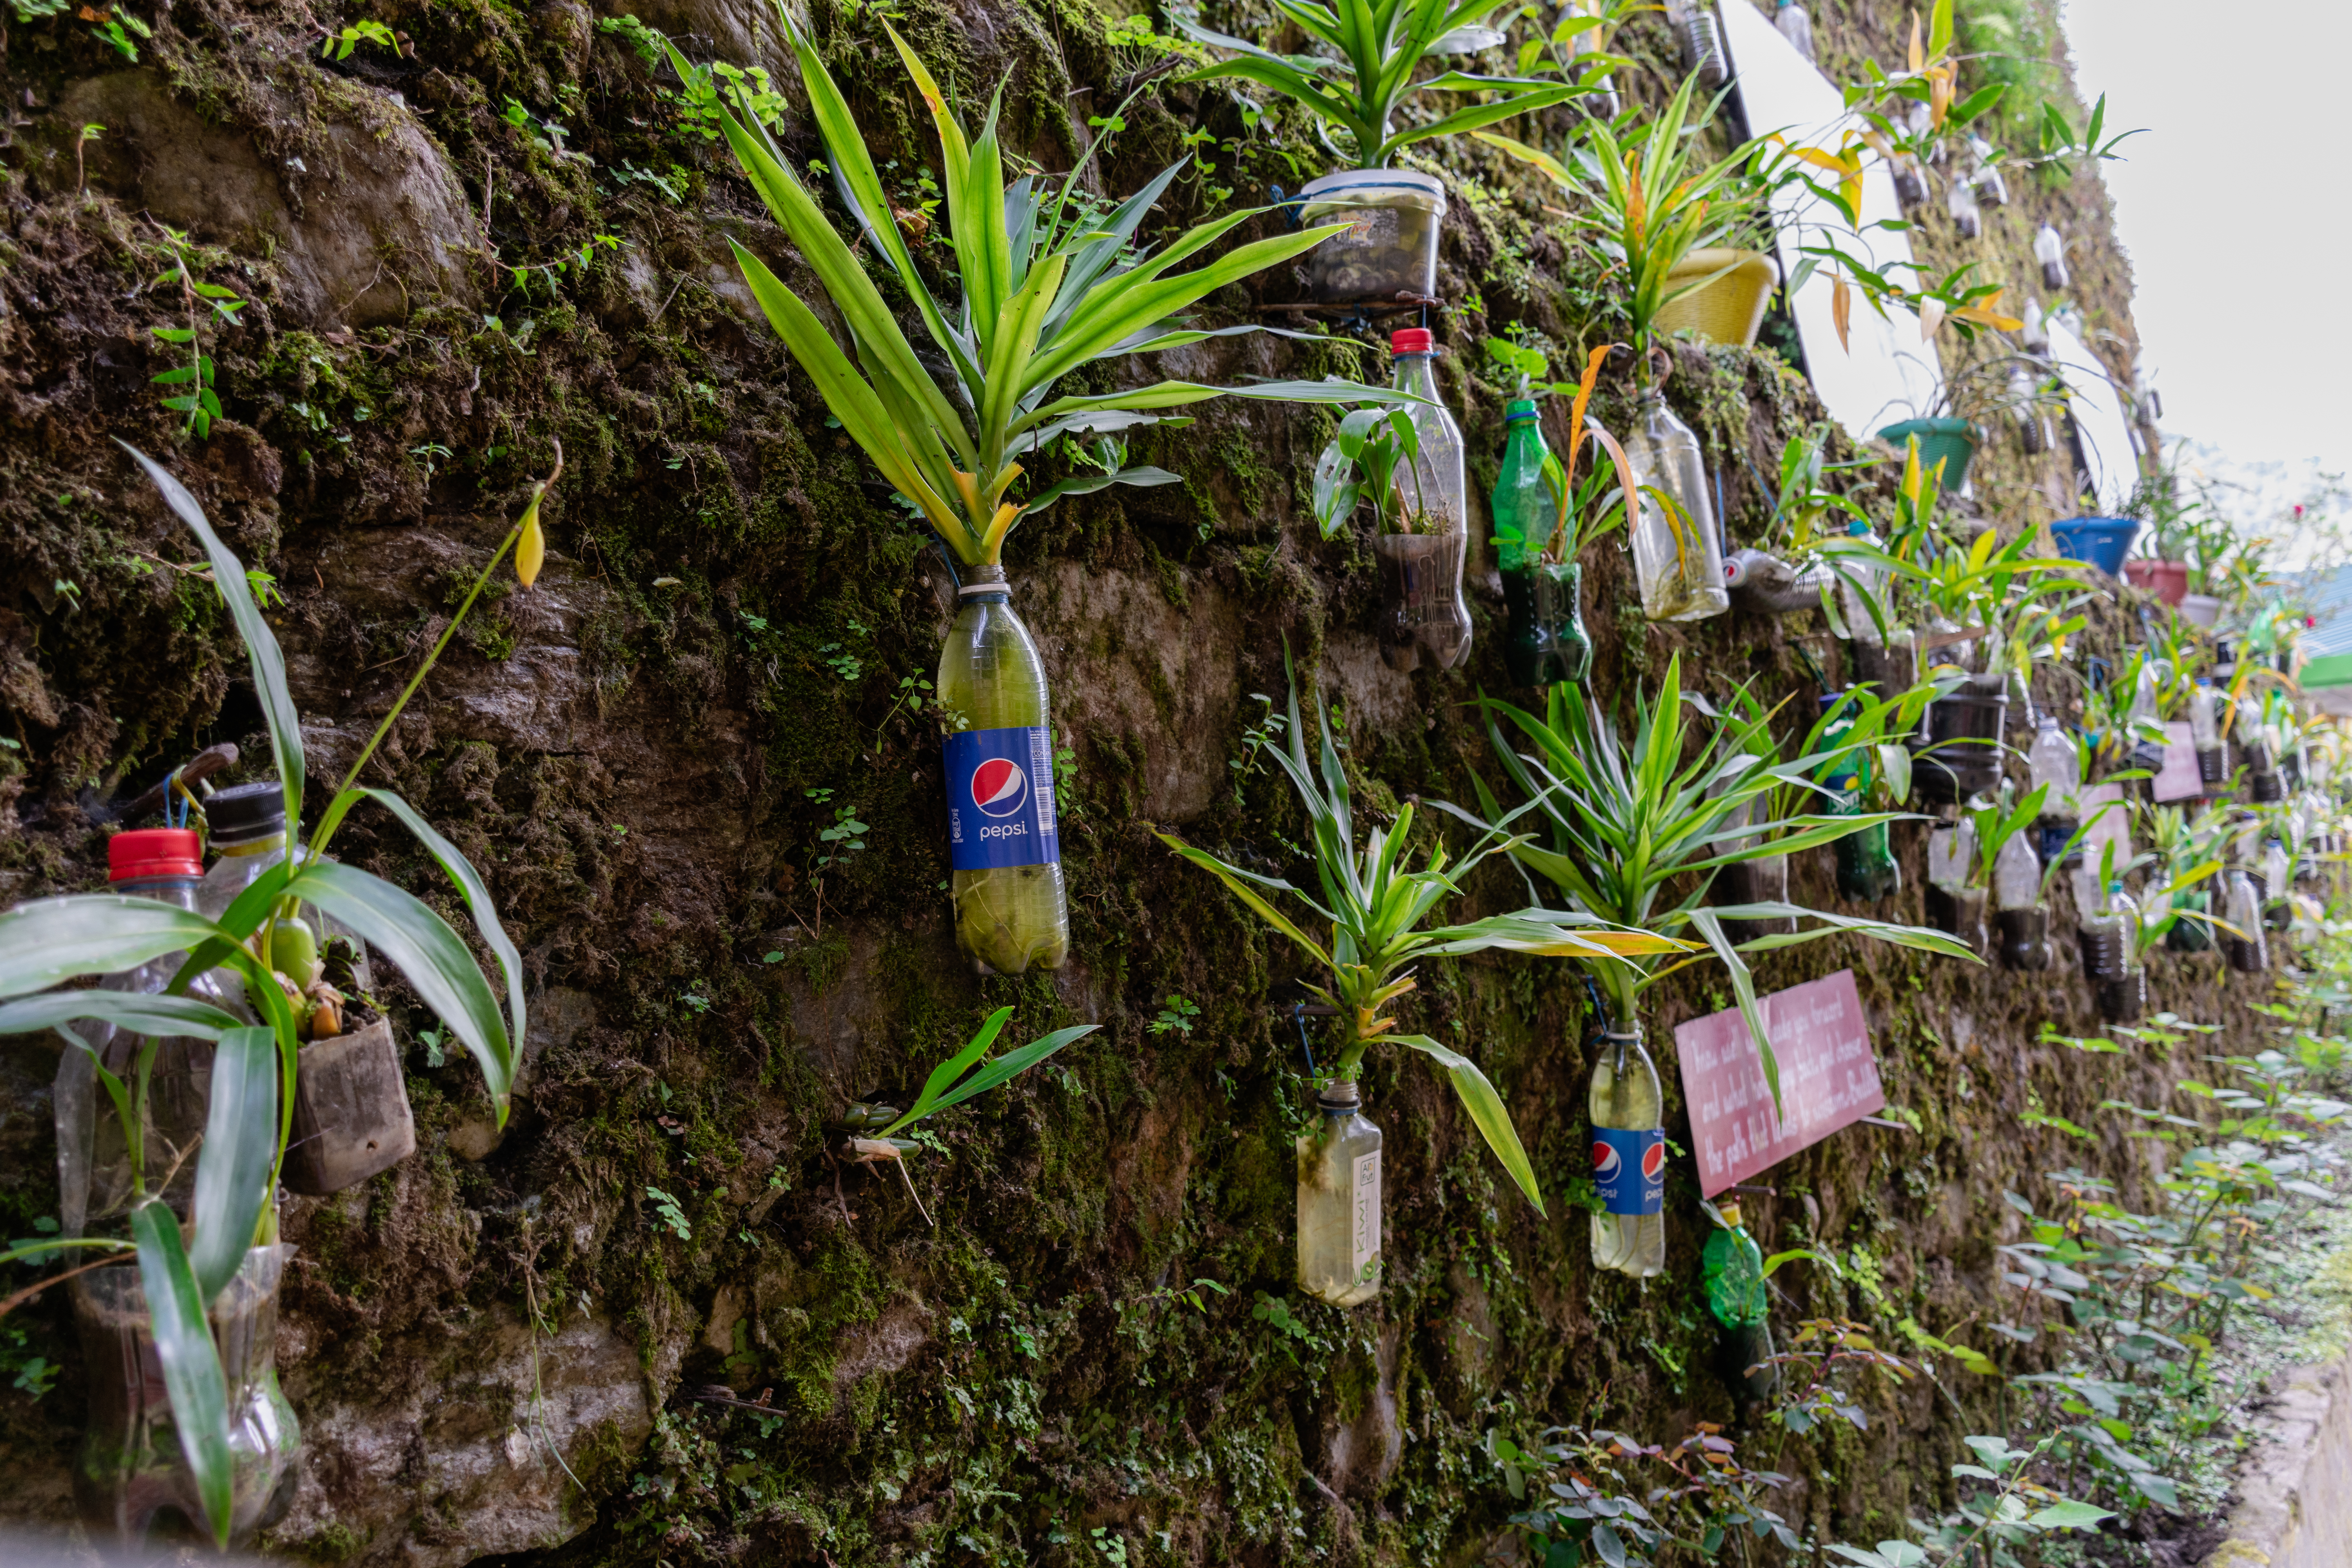 The recylcled garden in Rumtek Monastery, Sikkim